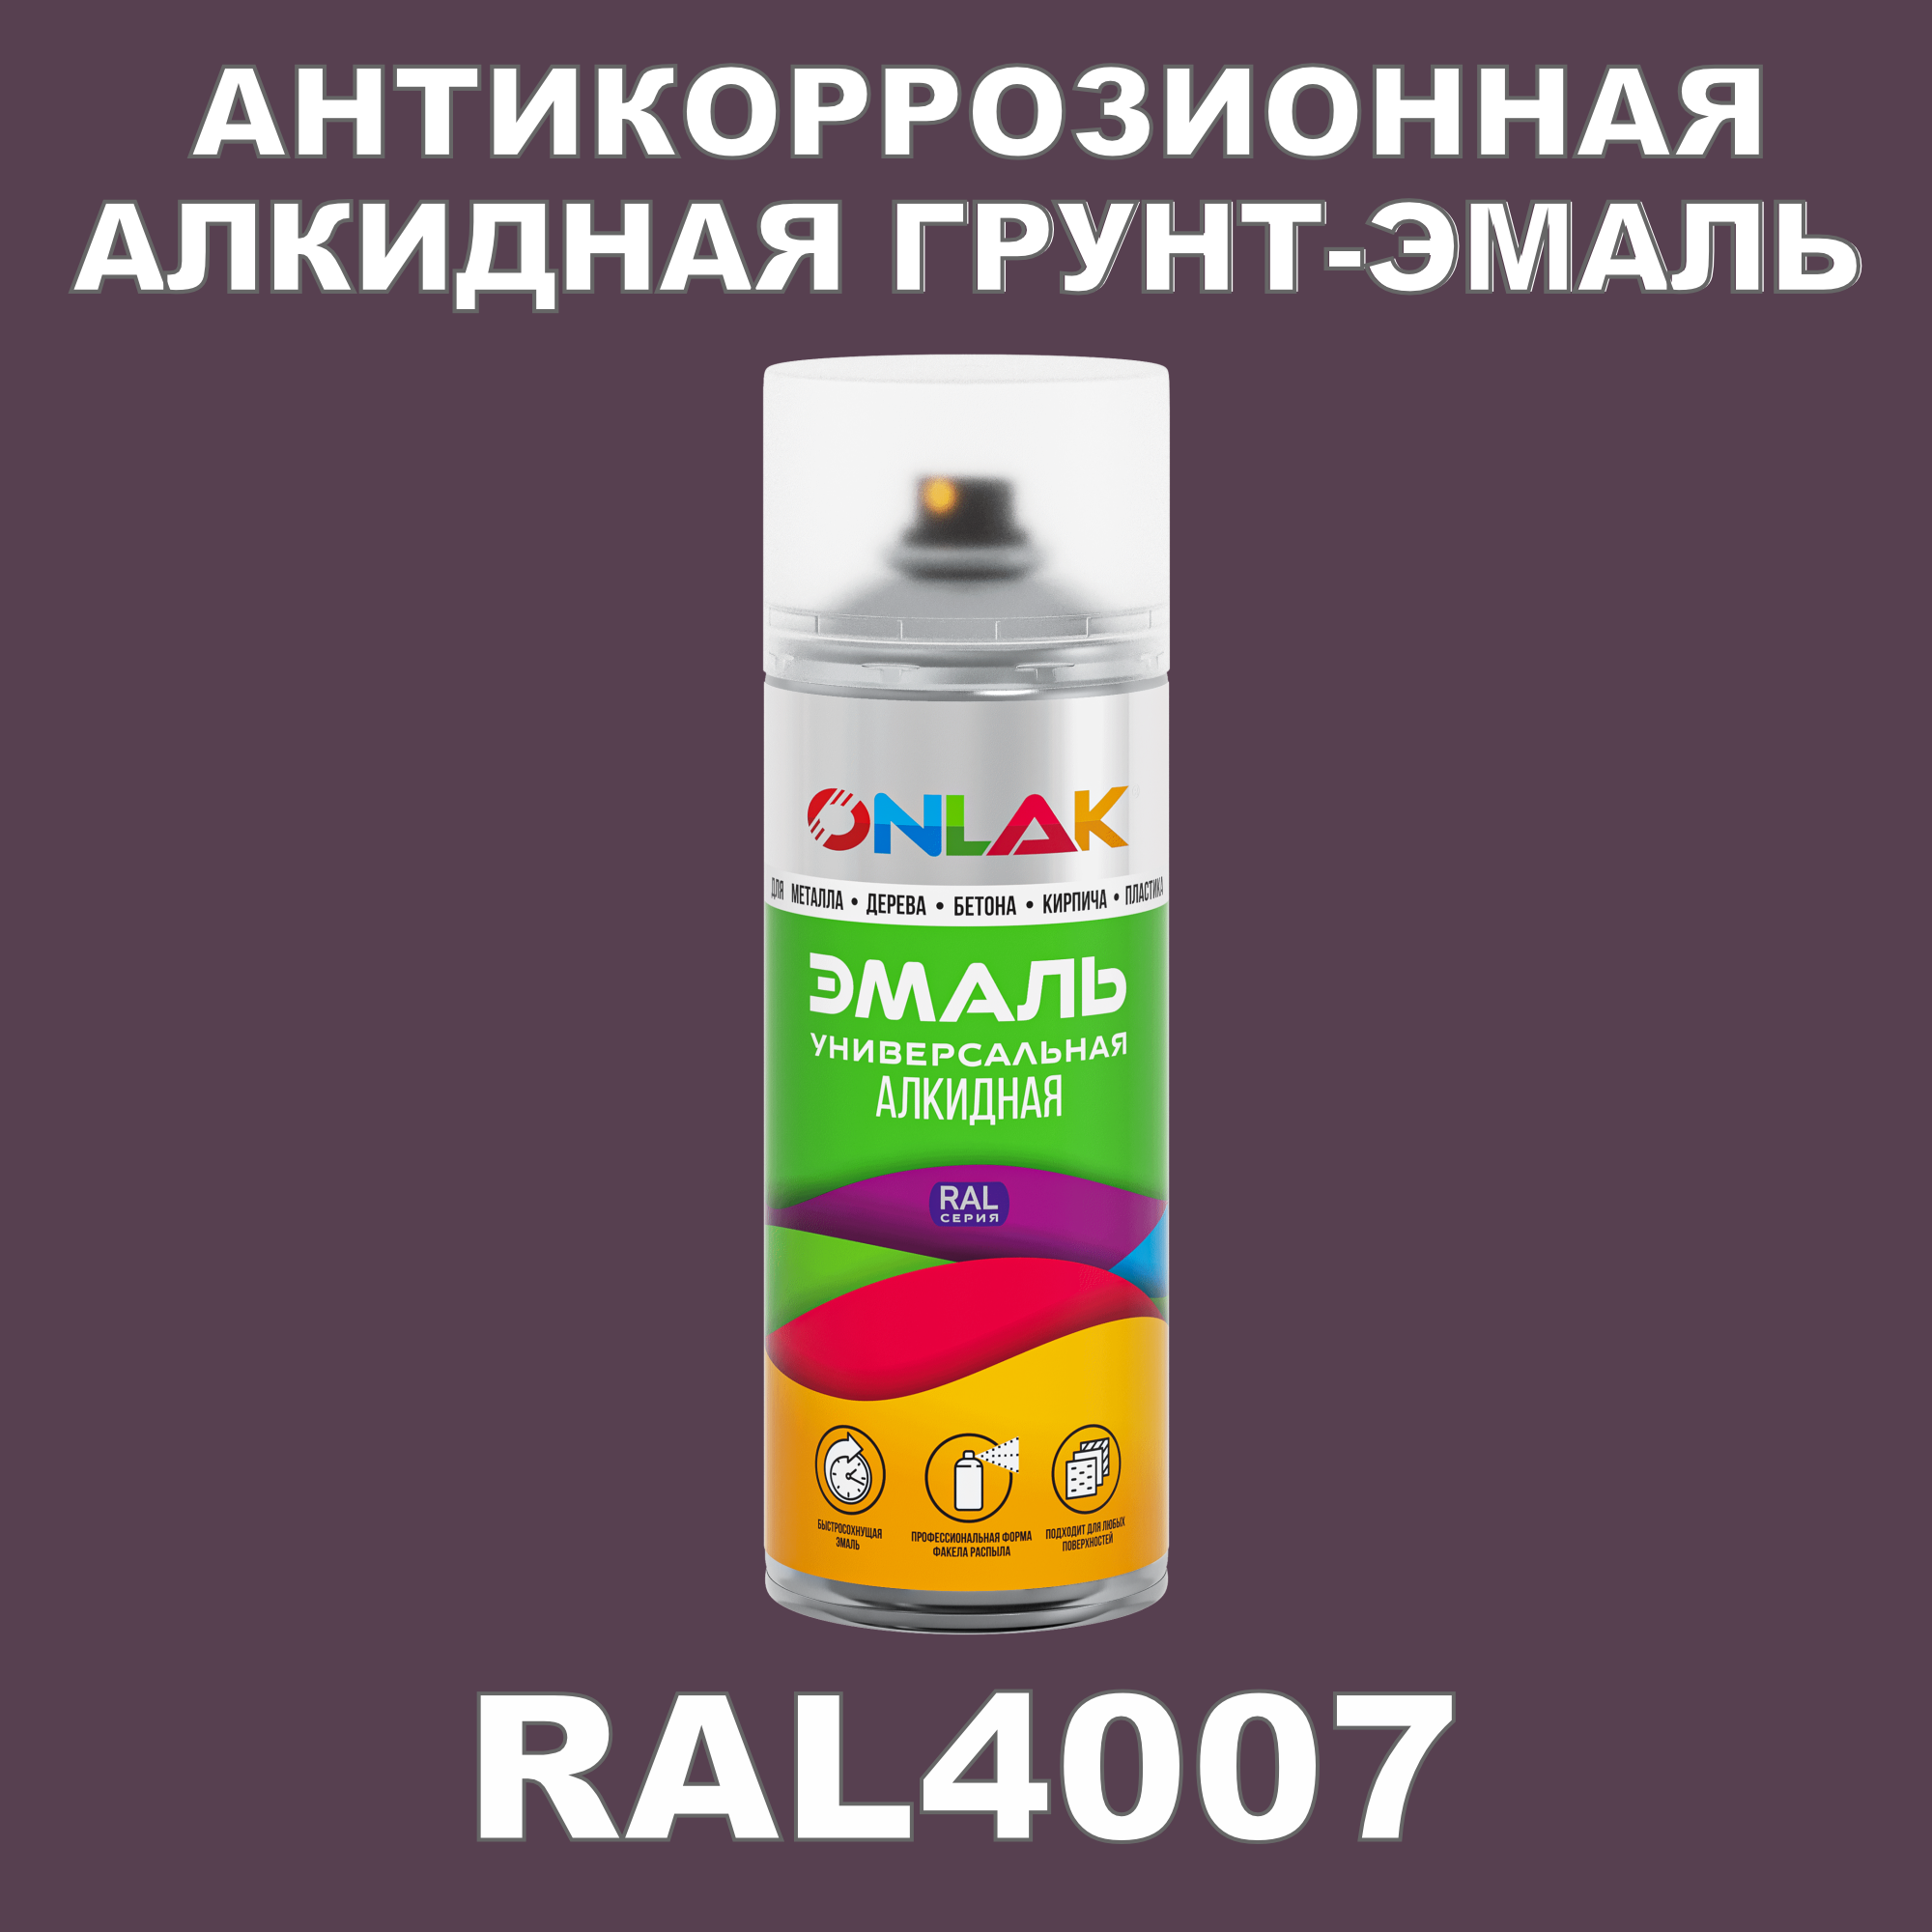 Антикоррозионная грунт-эмаль ONLAK RAL 4007,фиолетовый,572 мл рюкзак на молнии 2 наружных кармана фиолетовый